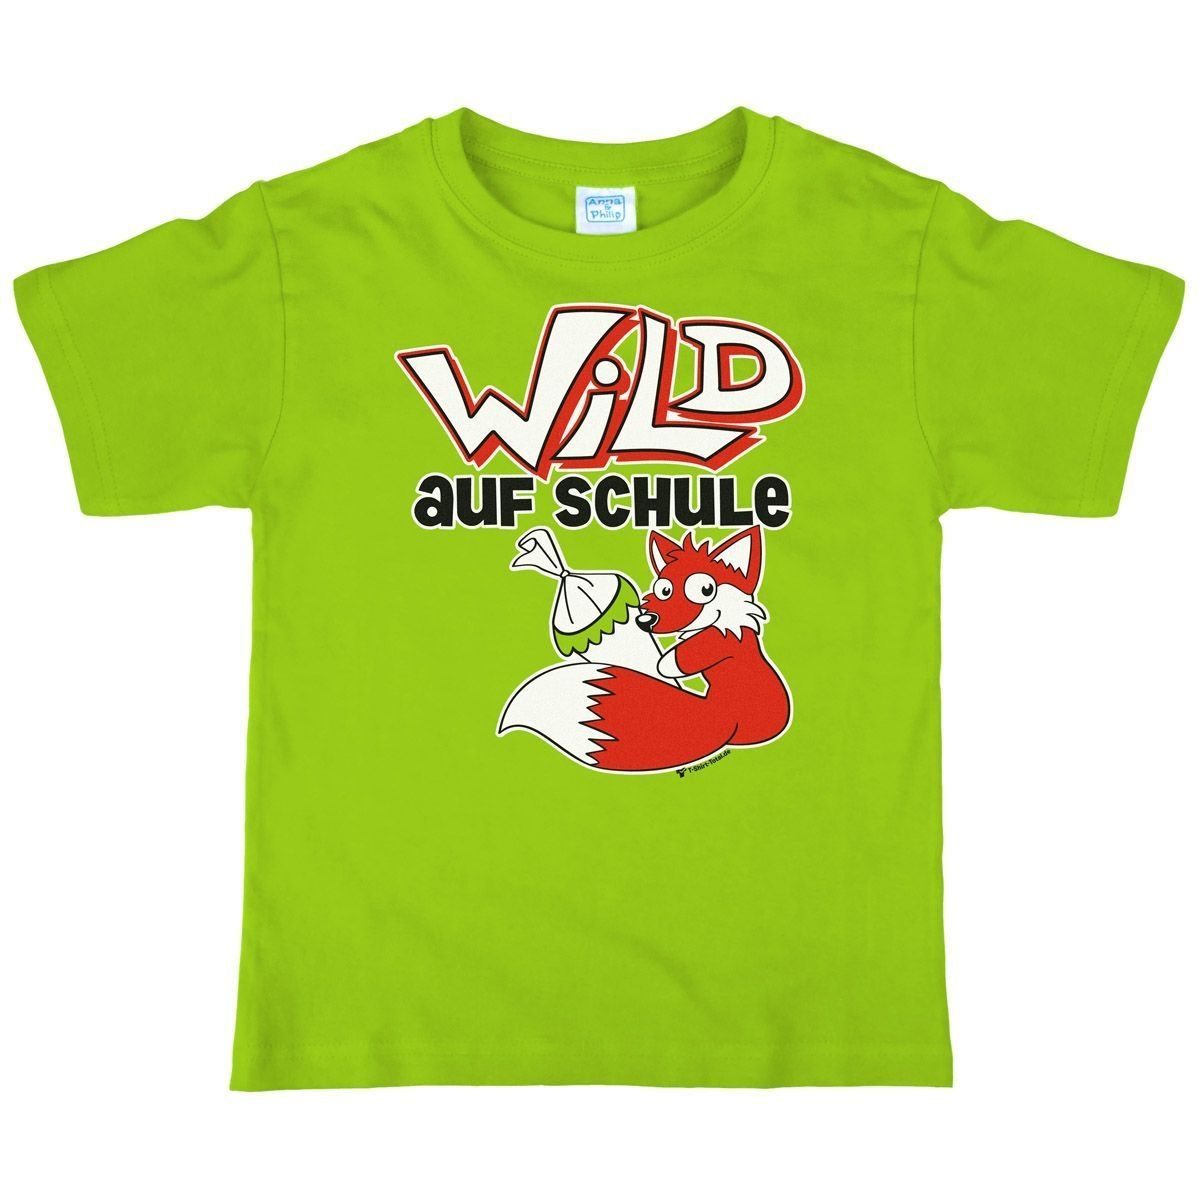 Wild auf Schule Kinder T-Shirt hellgrün 122 / 128